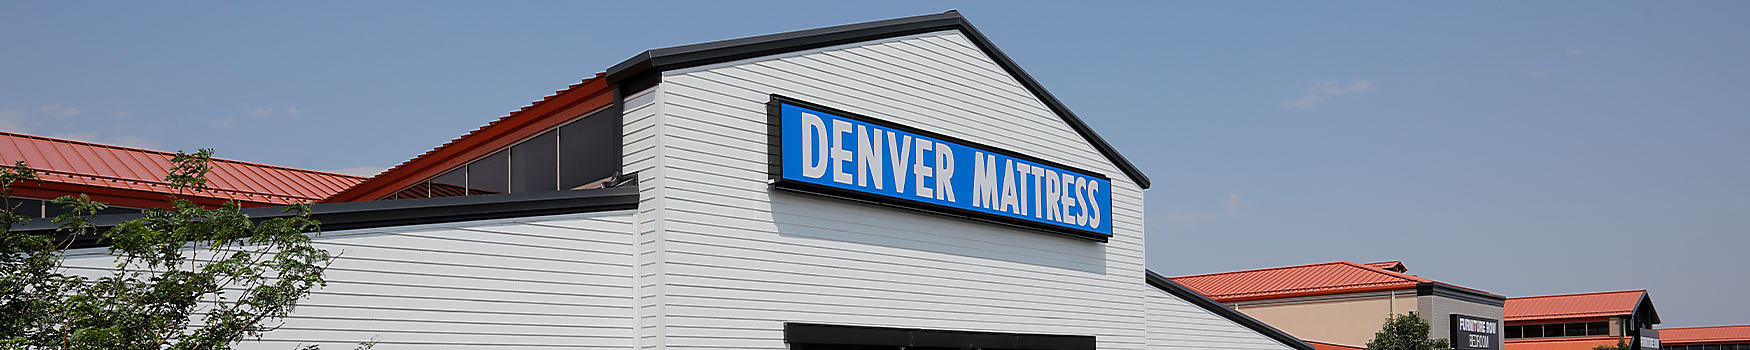 Denver, CO location banner